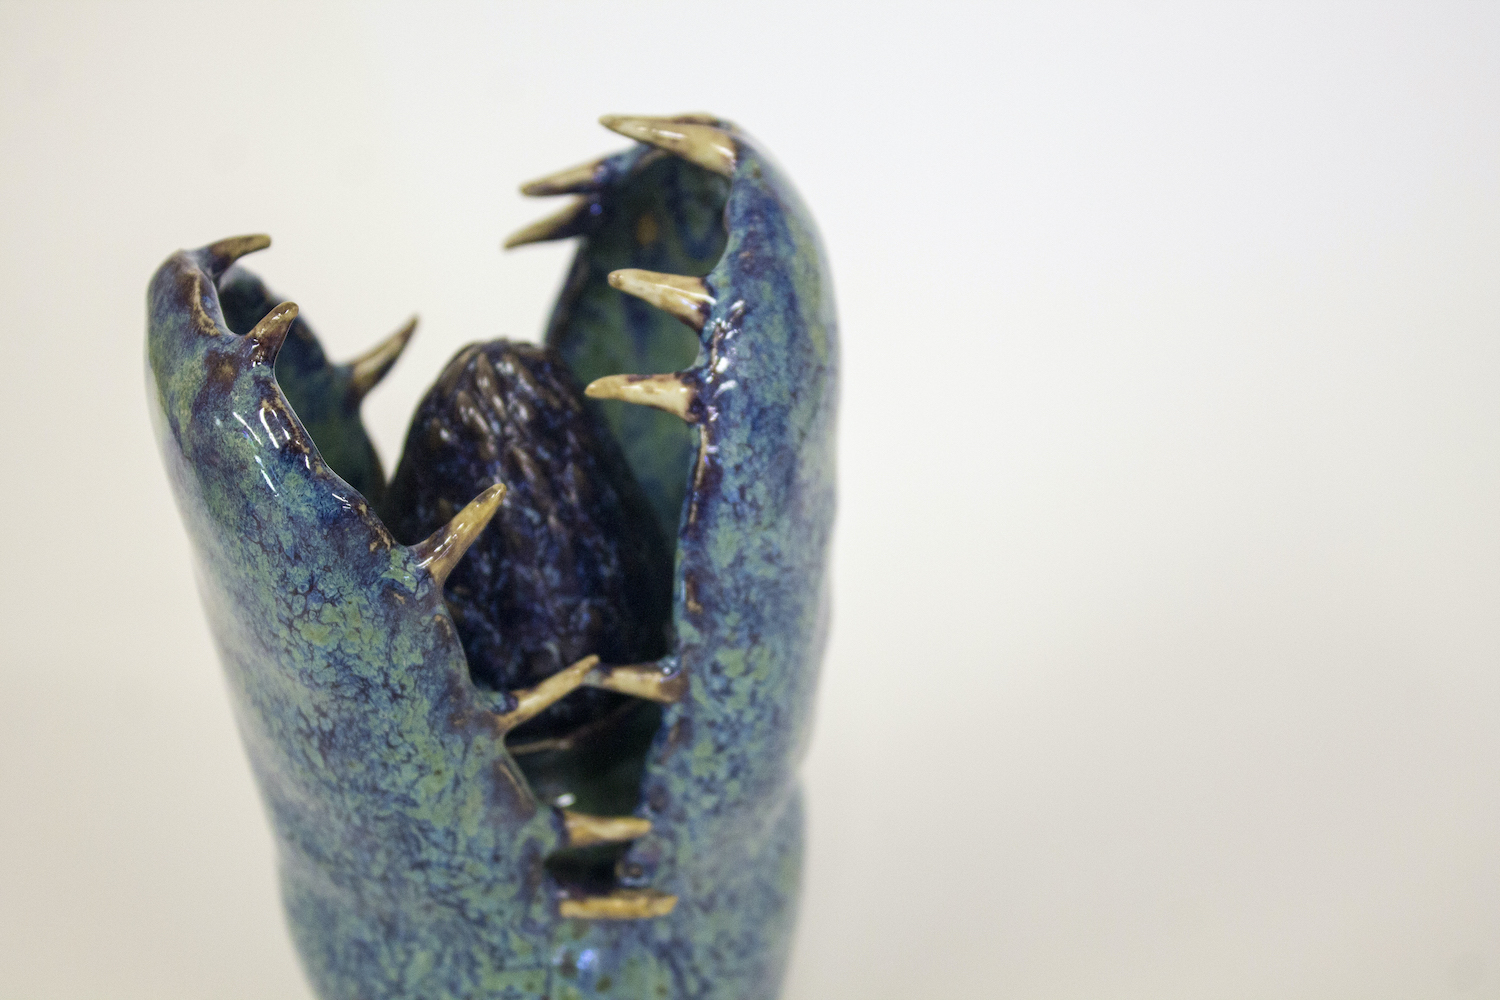 Blue ceramic sculpture